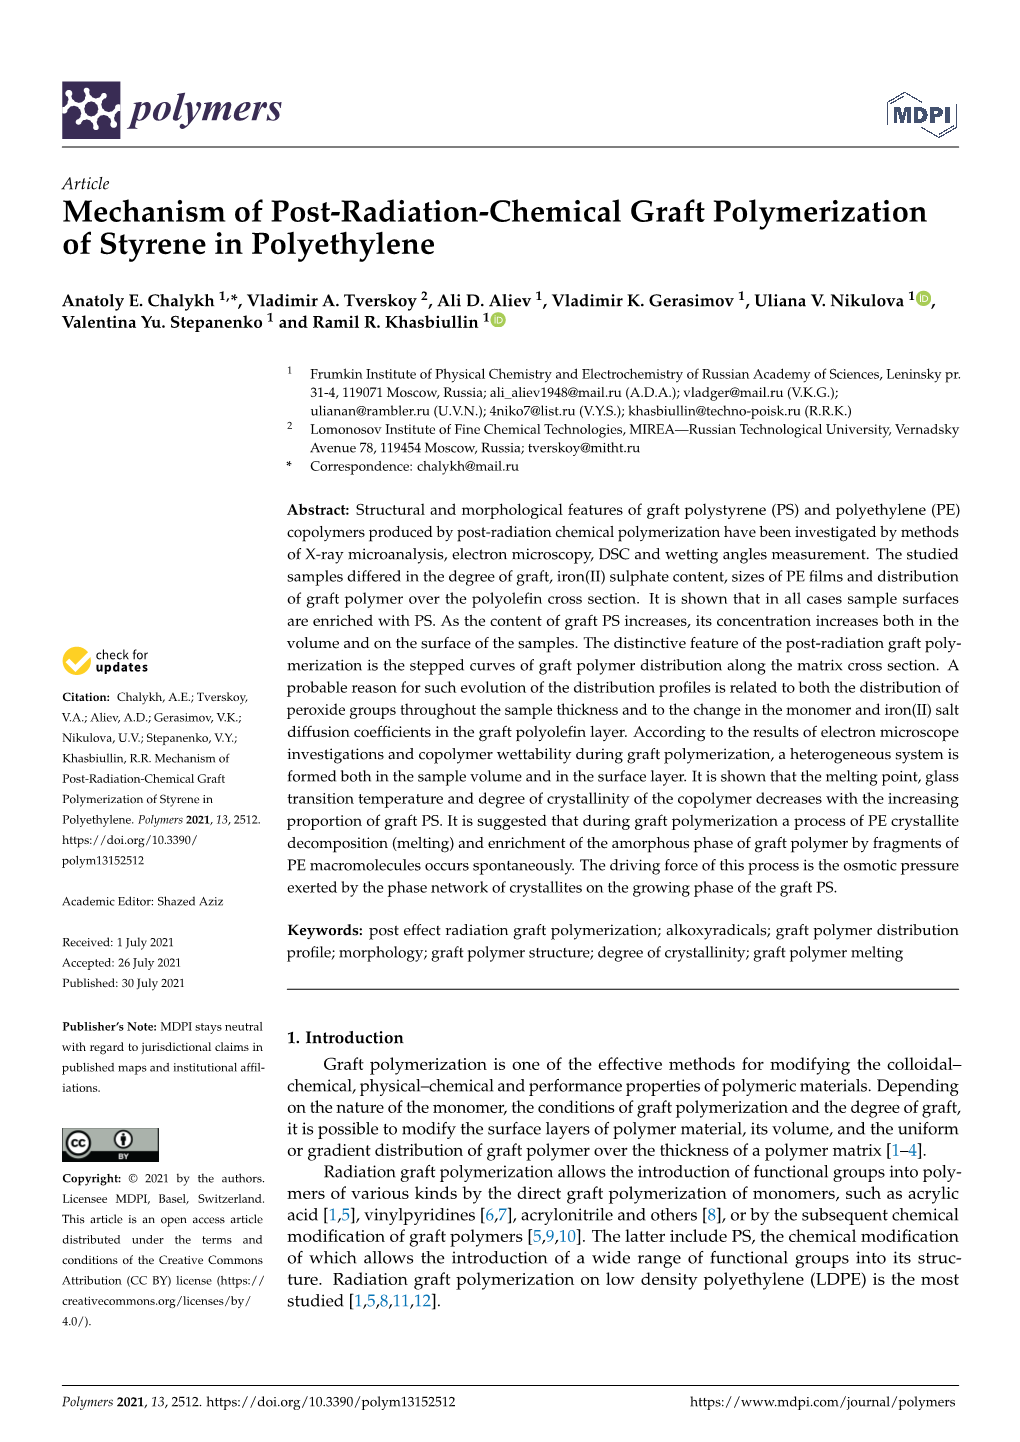 Mechanism of Post-Radiation-Chemical Graft Polymerization of Styrene in Polyethylene